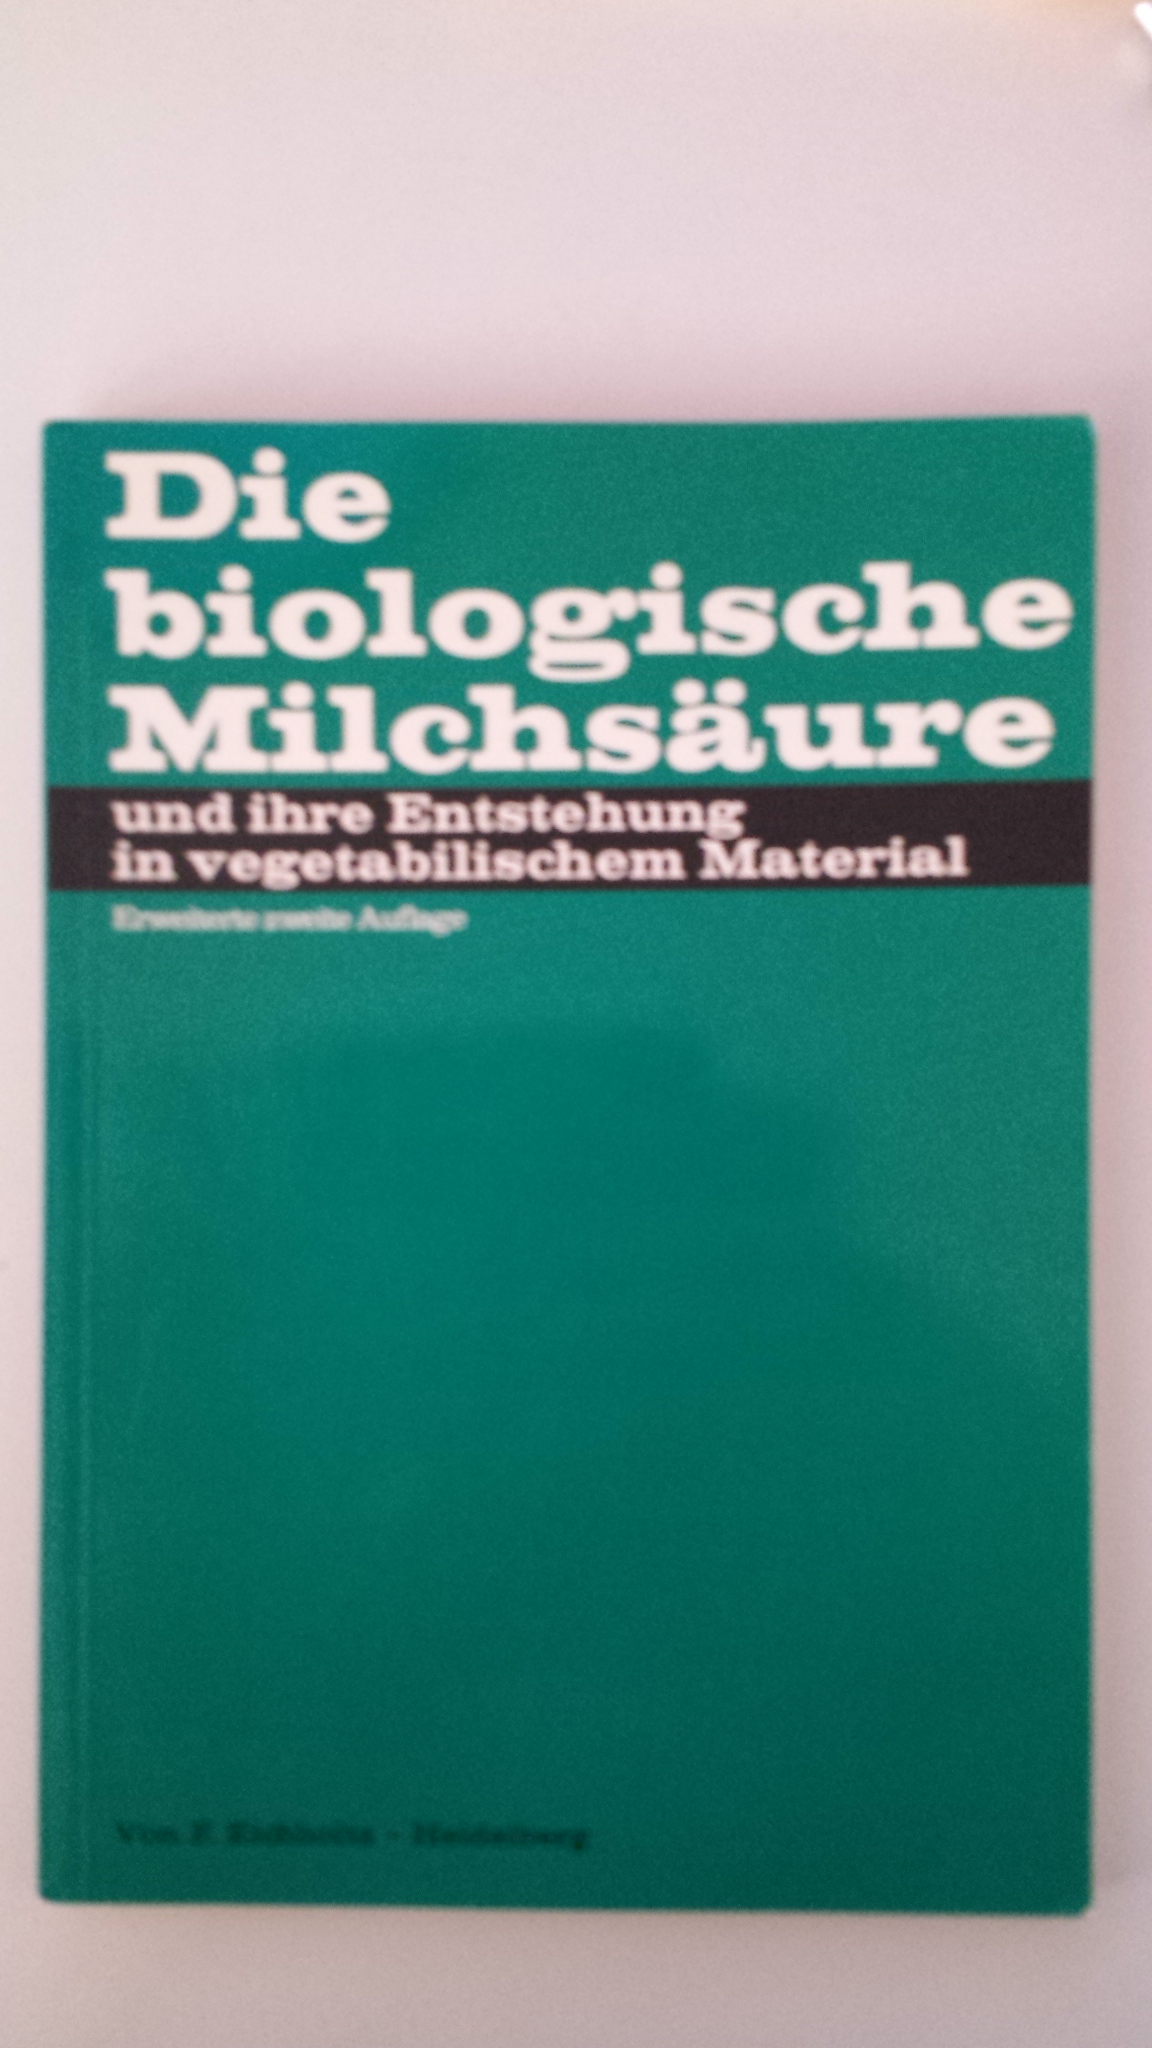 Buch: B145 Die biologische Milchsäure: und ihre Entstehung in vegetabilischem Material, 2. Auflage.